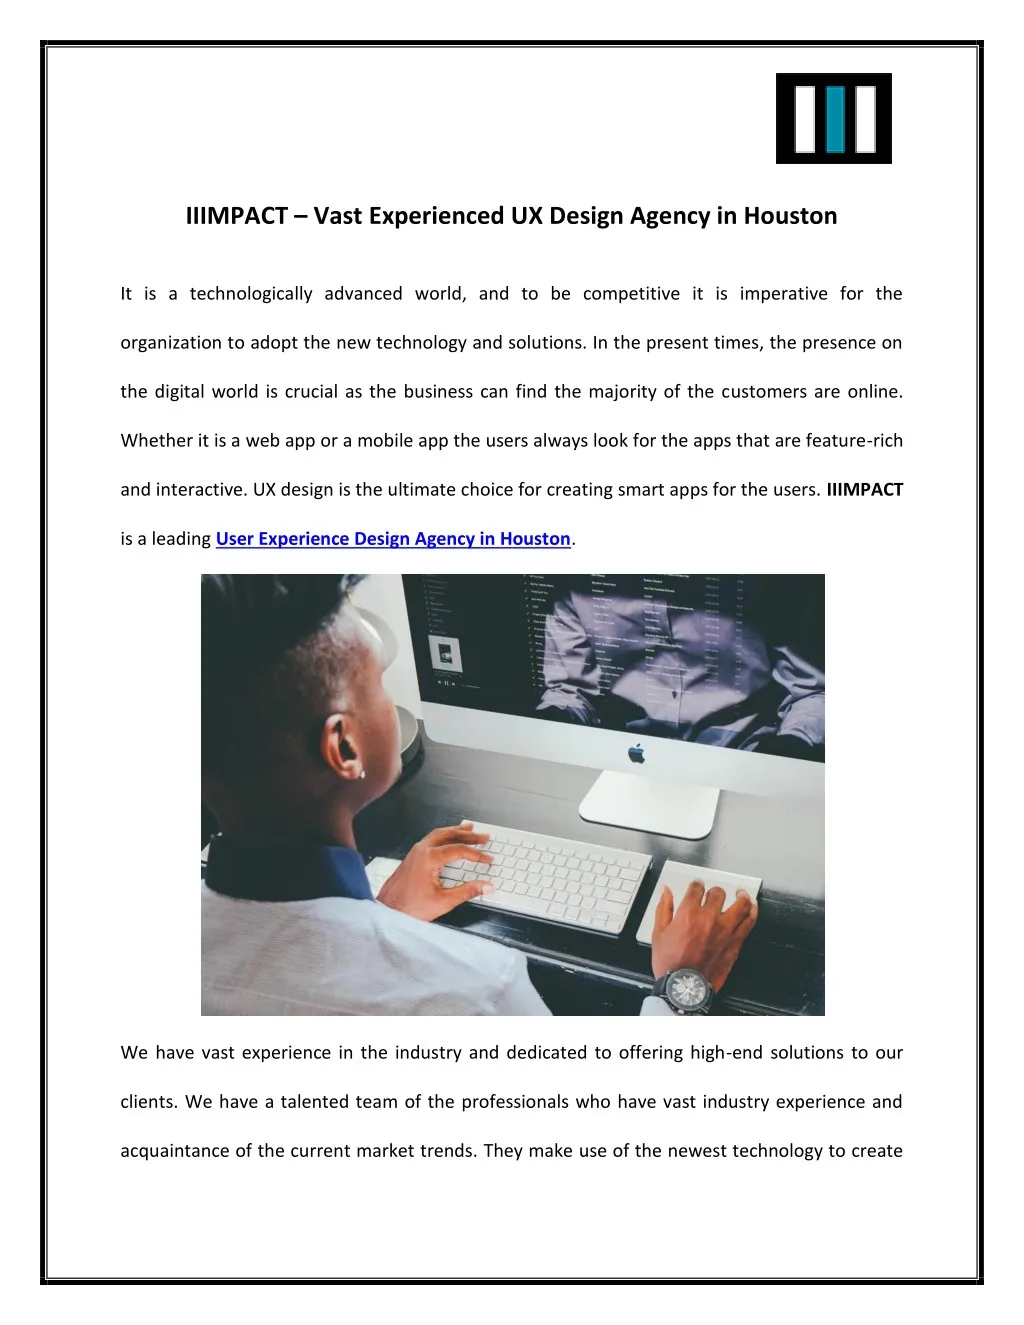 iiimpact vast experienced ux design agency